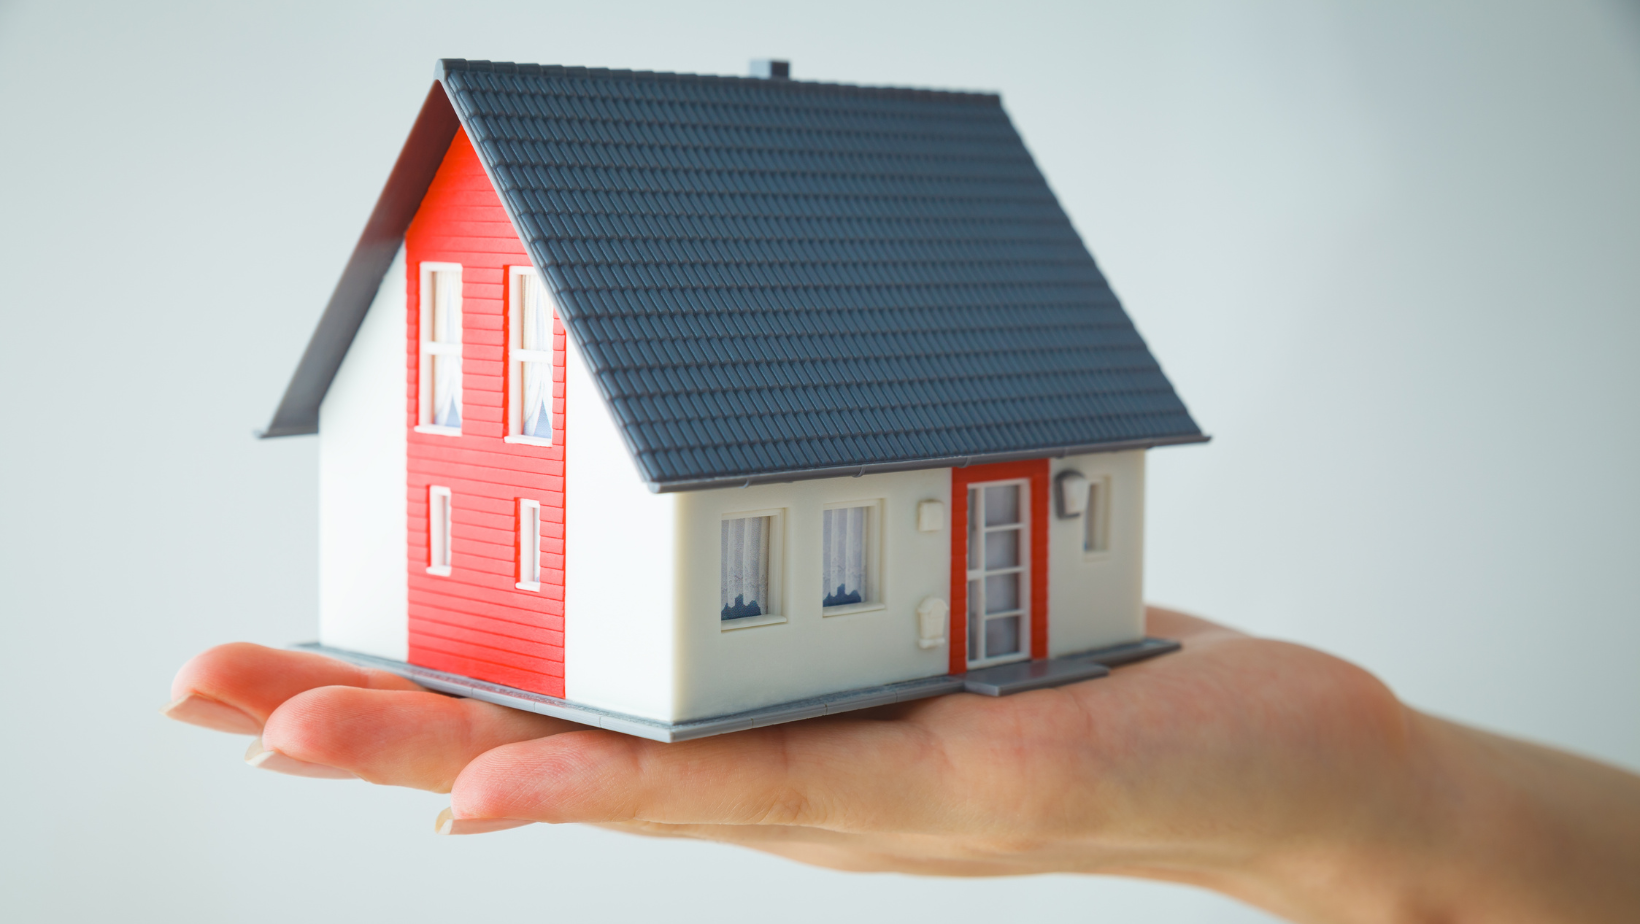 Tanie domy na sprzedaż - czy warto zainwestować w niedrogą nieruchomość?